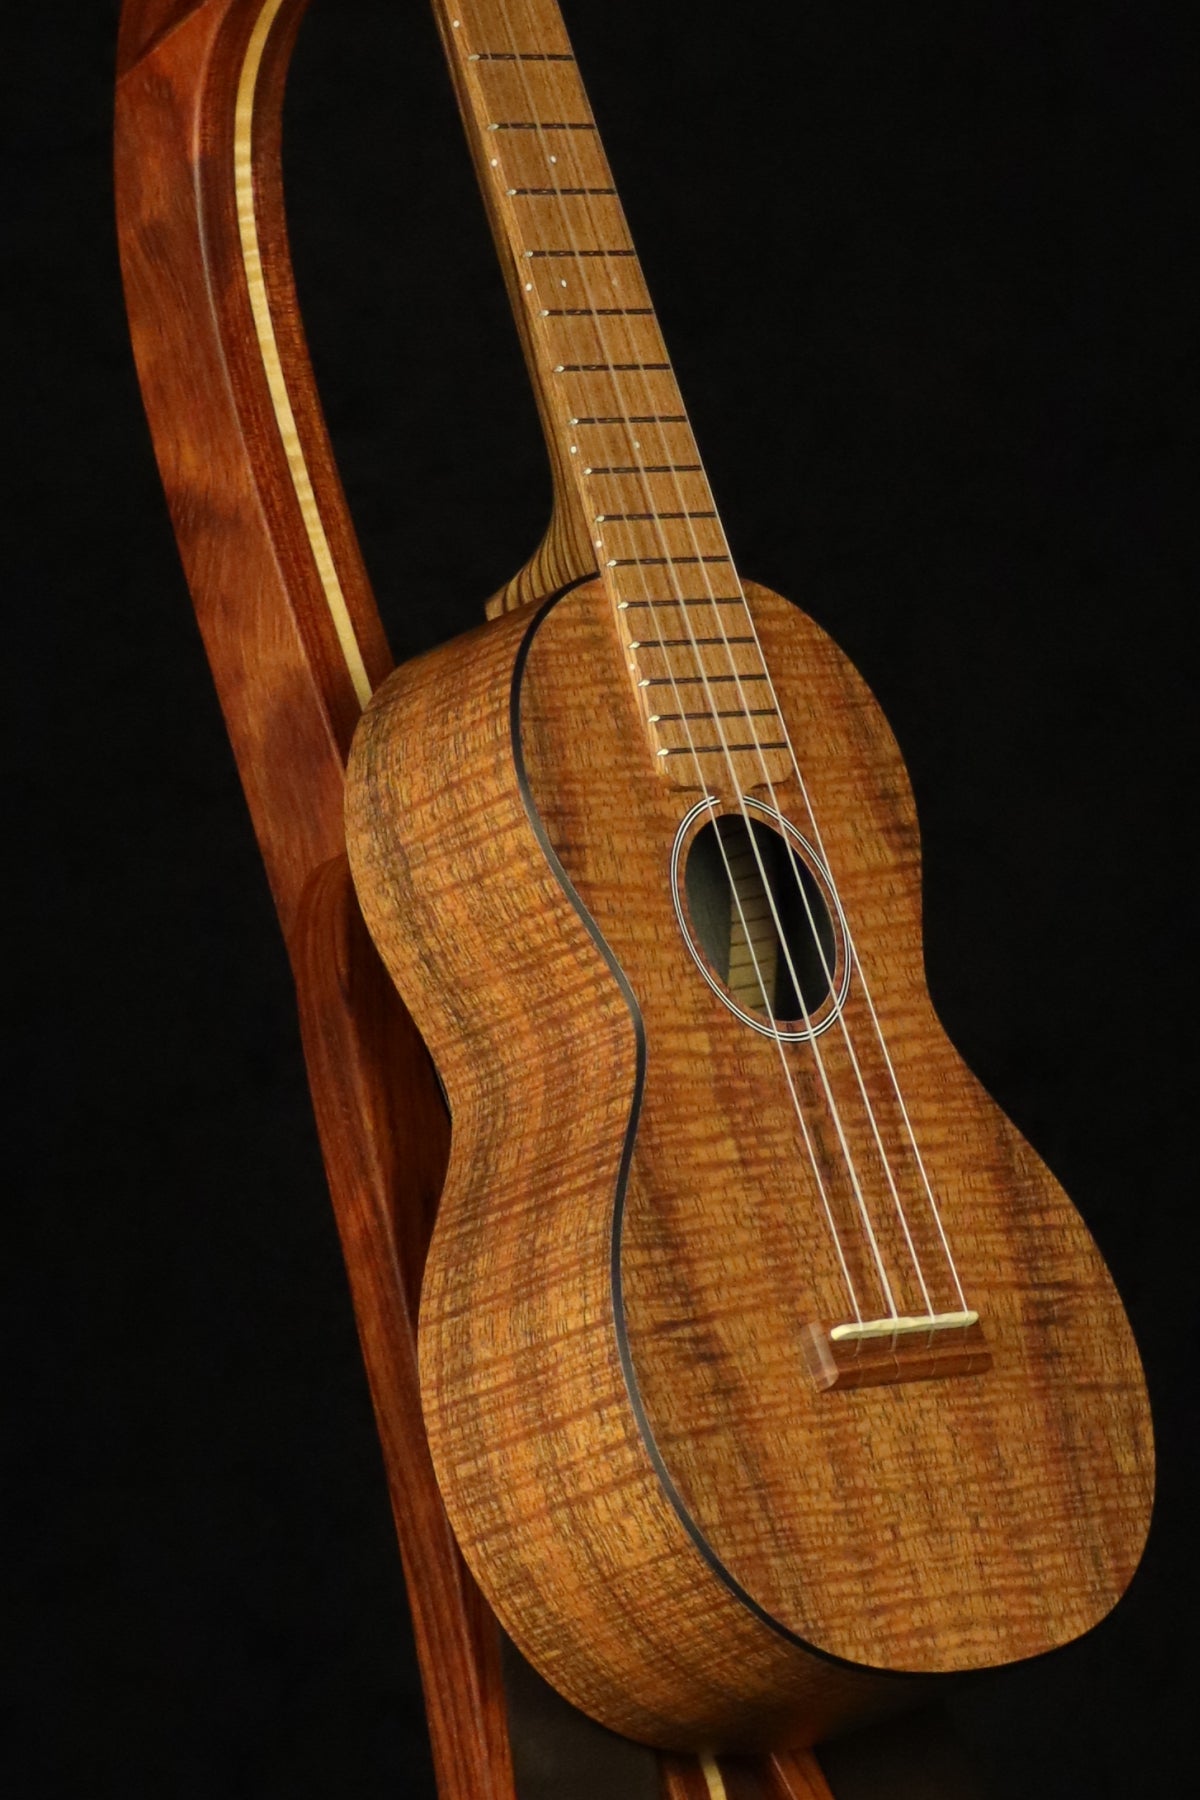 Folding bubinga rosewood and curly maple wood ukulele floor stand closeup front image with Martin ukulele